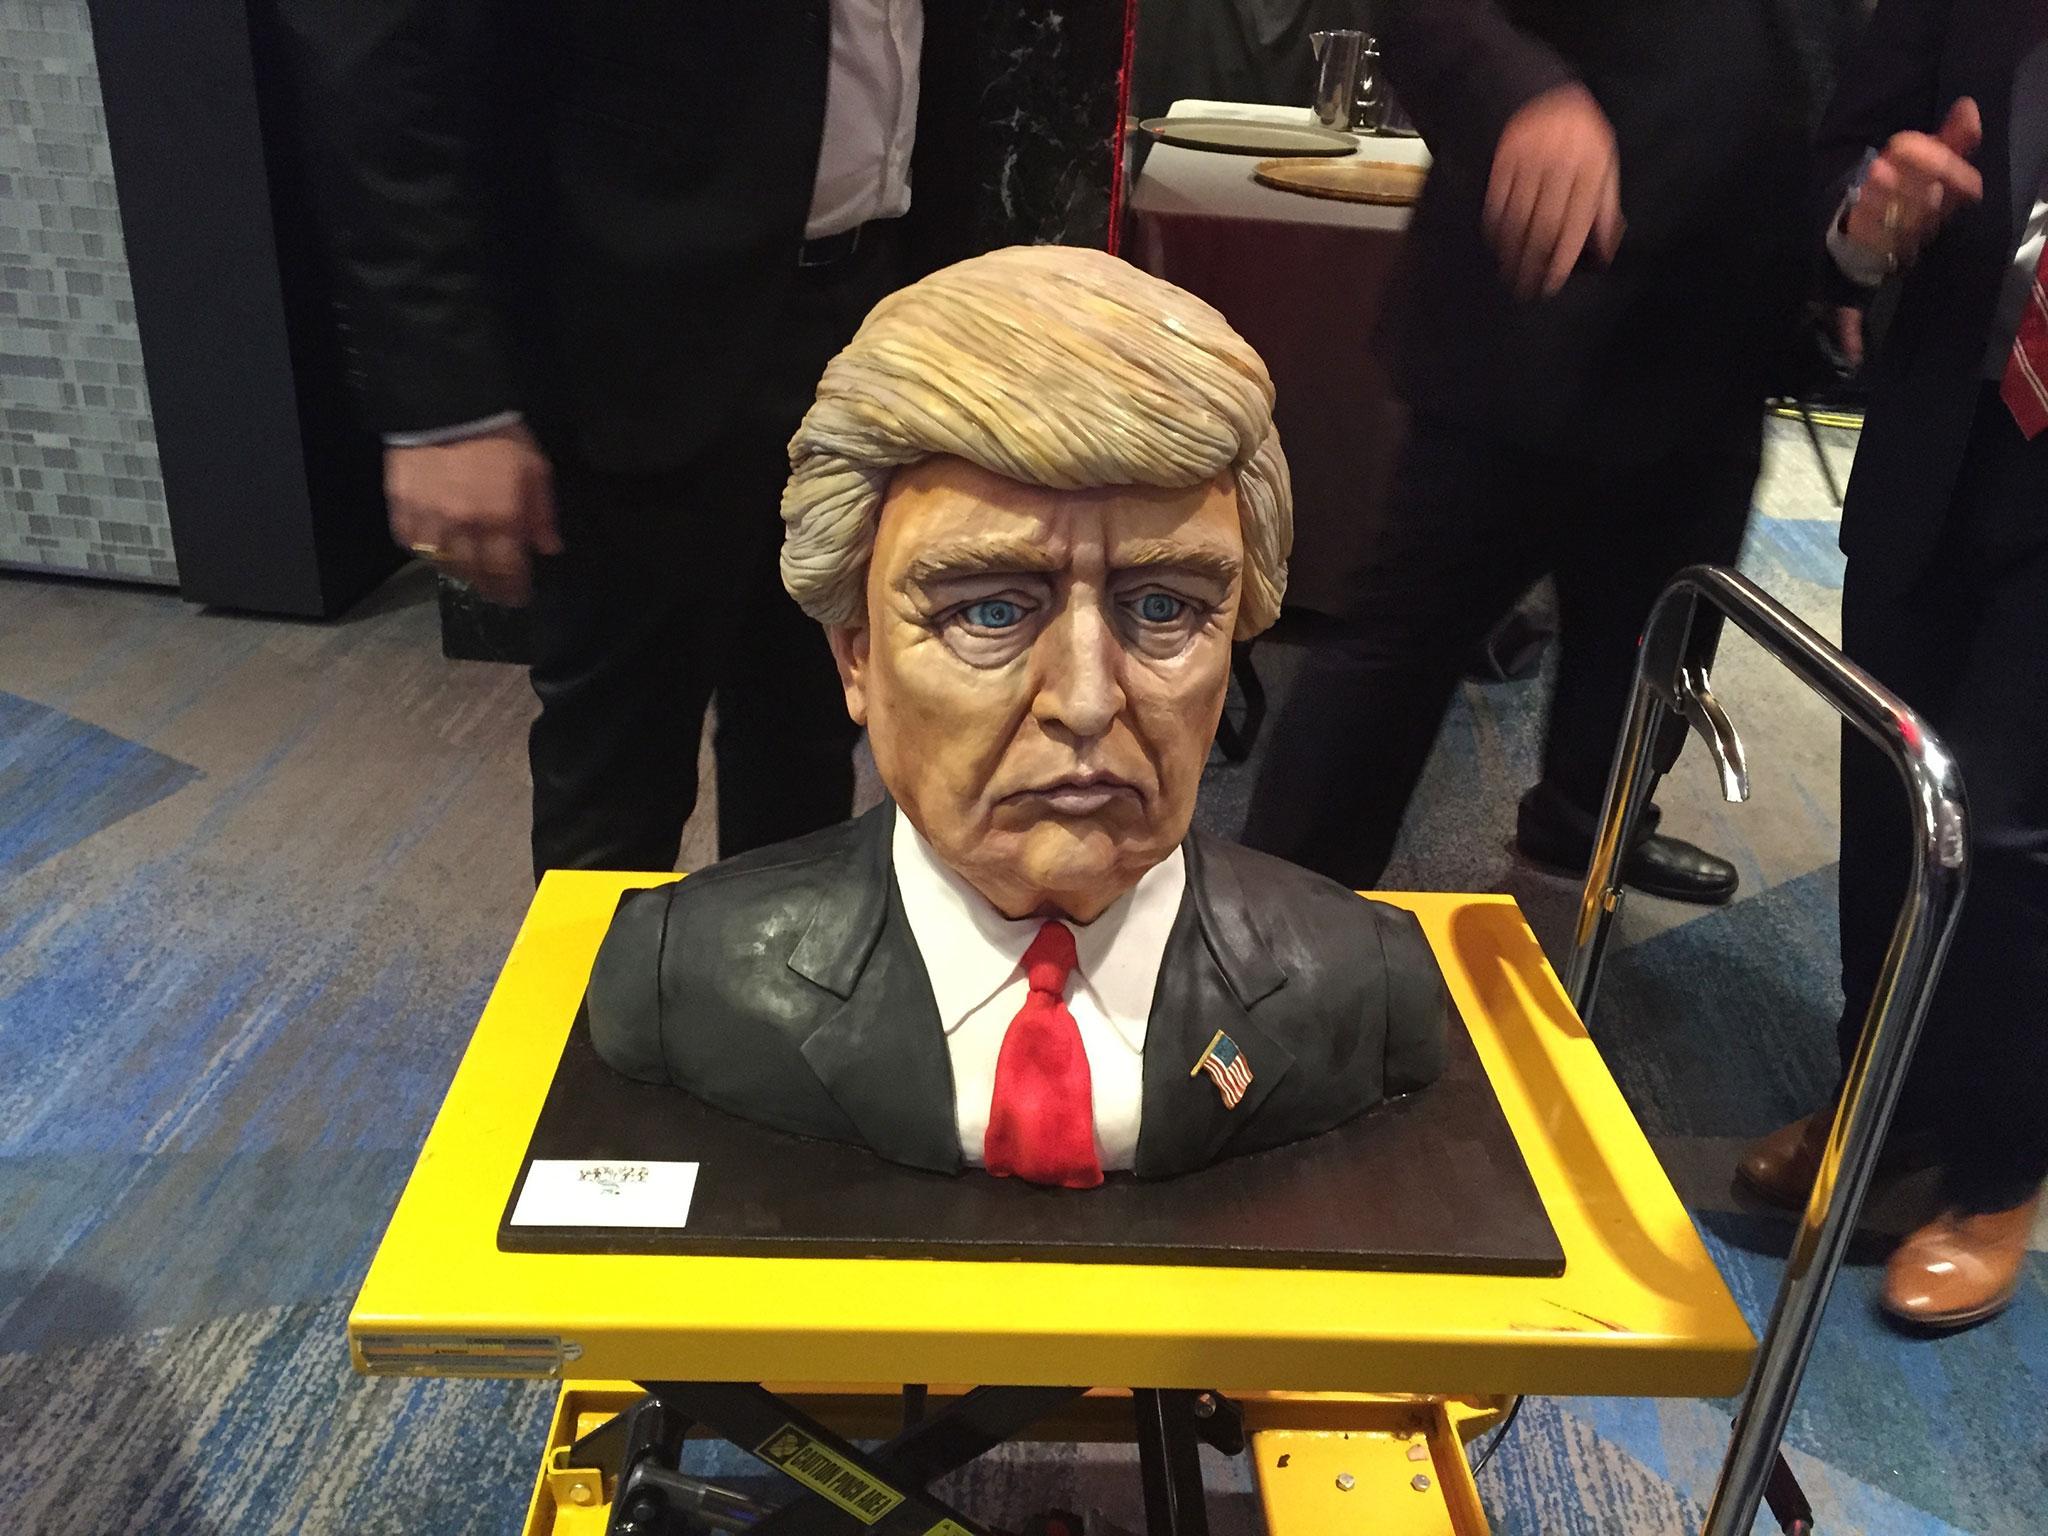 Donald Trump cakes